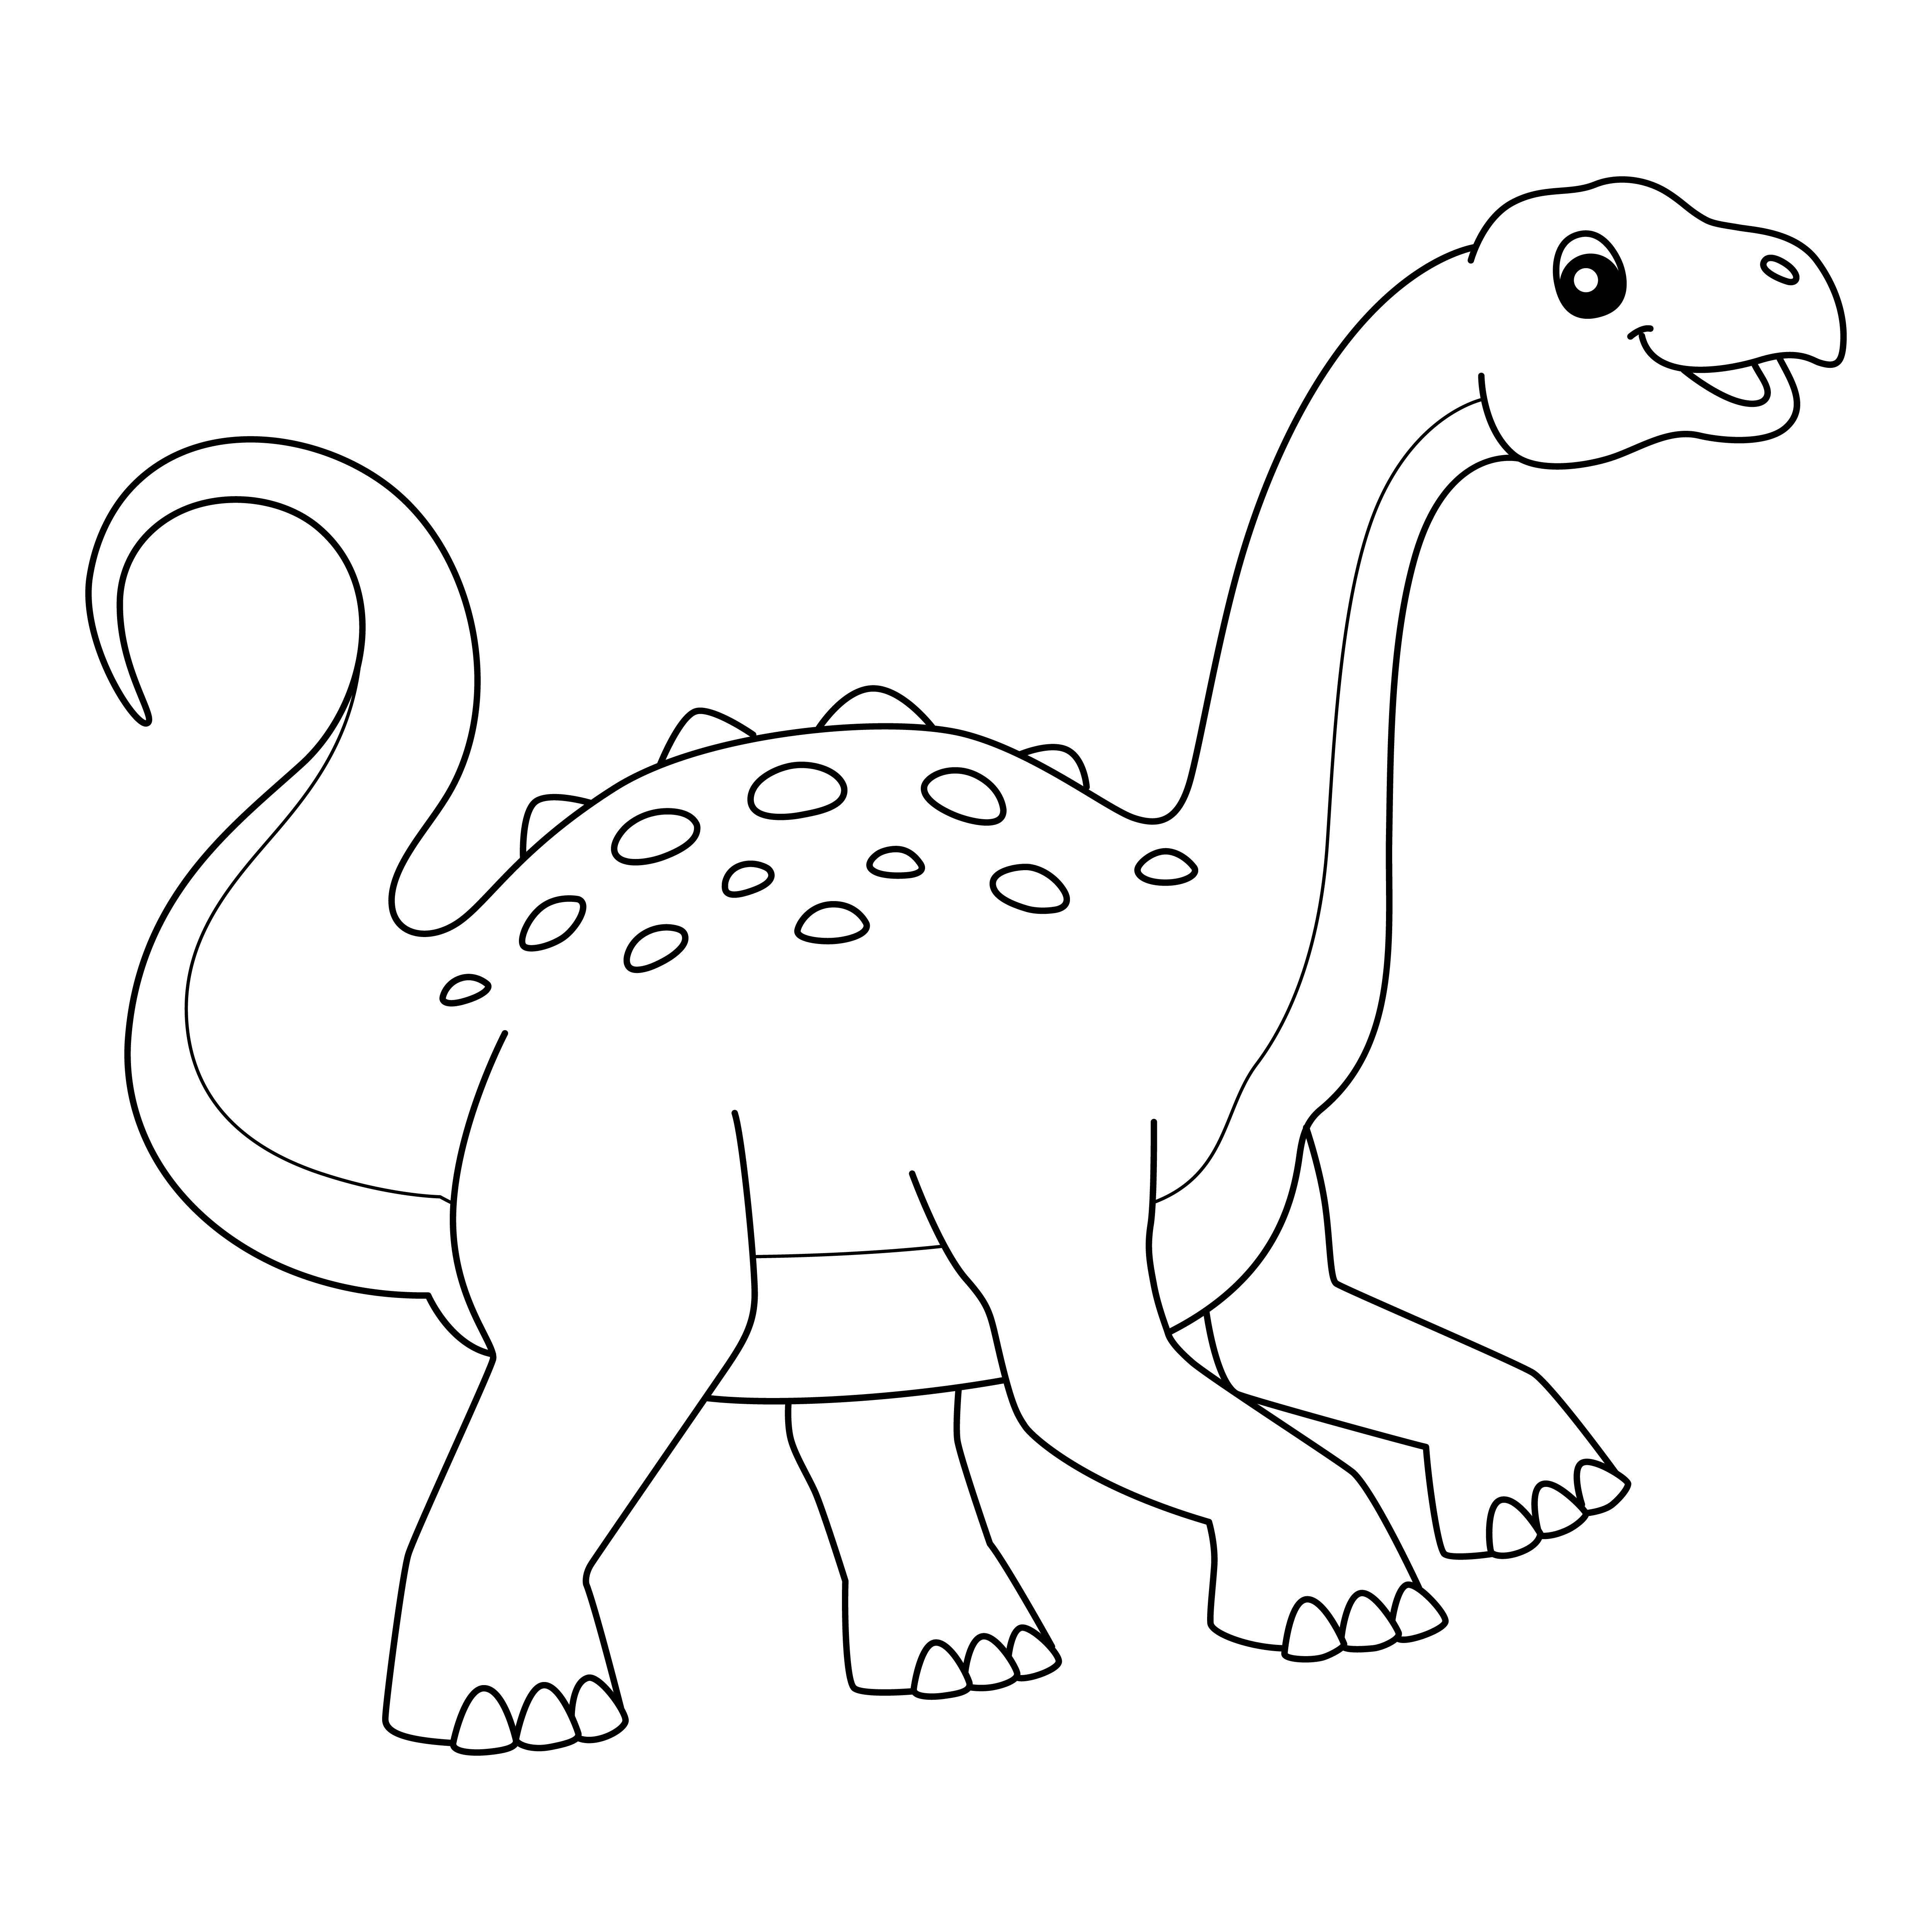 Раскраска динозавр Неукензавр формата А4 в высоком качестве